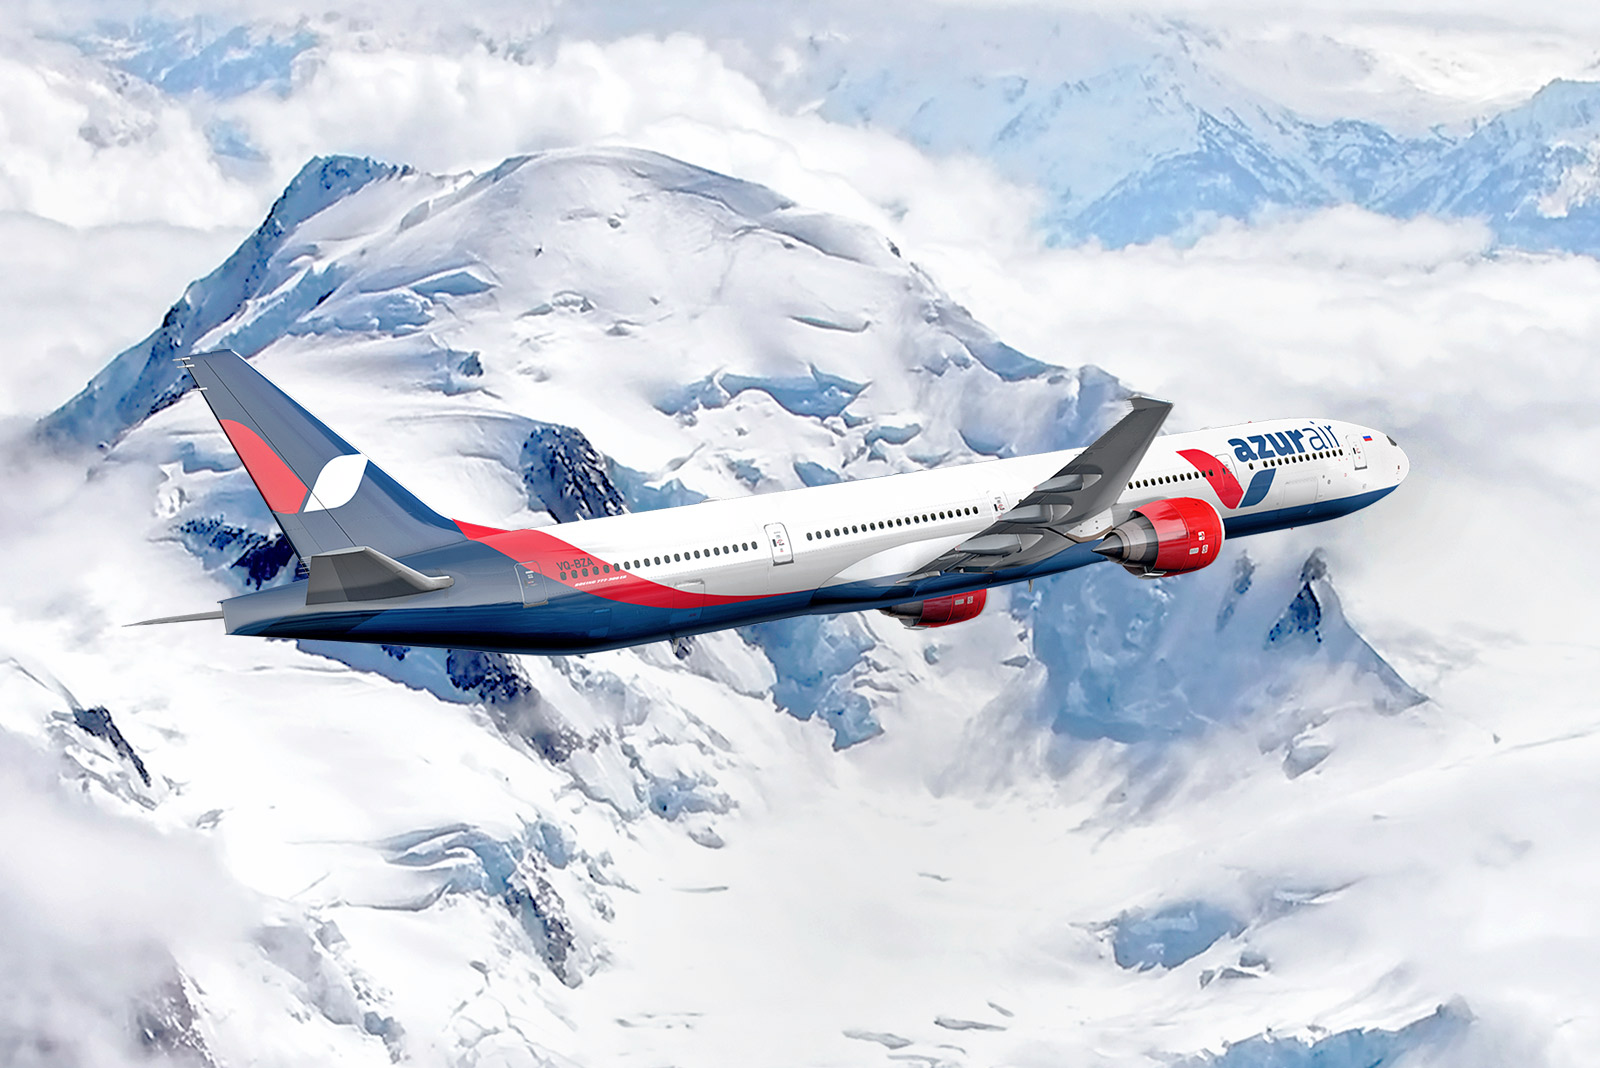 AZUR air, Новости, 17 Декабря 2021, AZUR air перевезла более 24 000 000 пассажиров за семь лет полётов